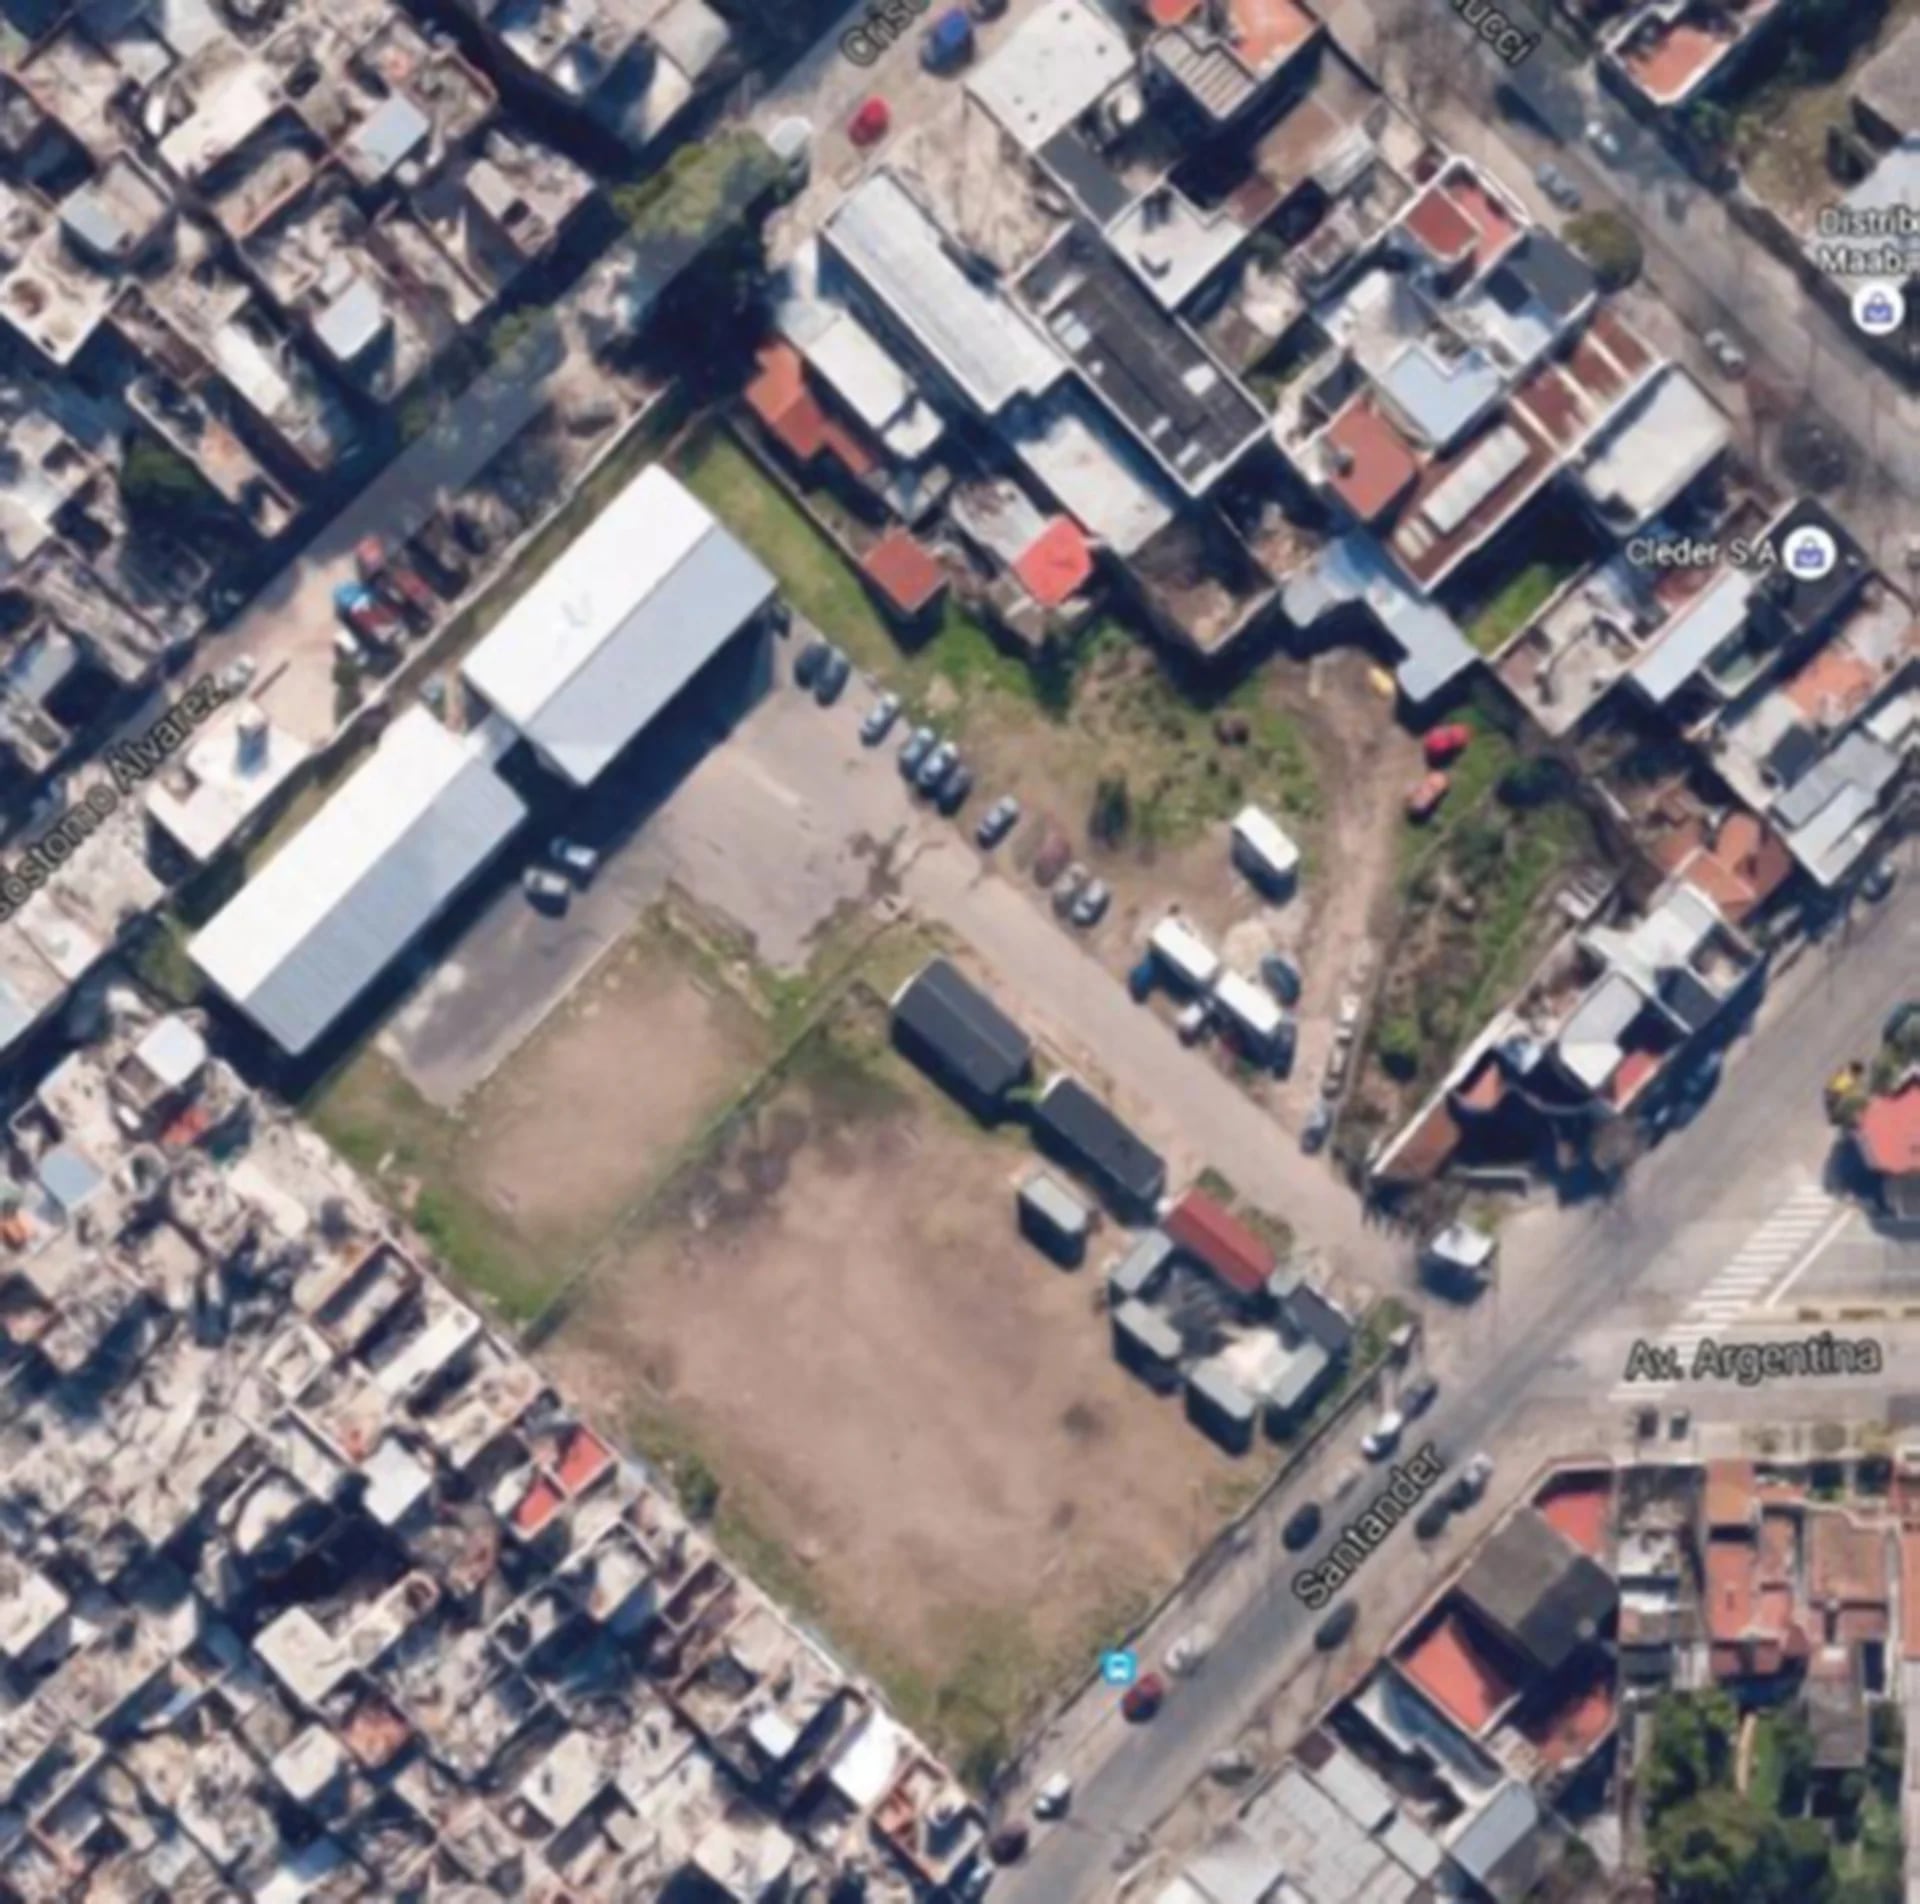 Vista aérea del terreno que la AABE le cederá gratuitamente a la Parroquia Nuestra Señora del Carmen: es un terreno de 2.500m2 que se encuentra en la calle Herrera 3496, entre las intersecciones de Lisandro de la Torre y Avenida Argentina